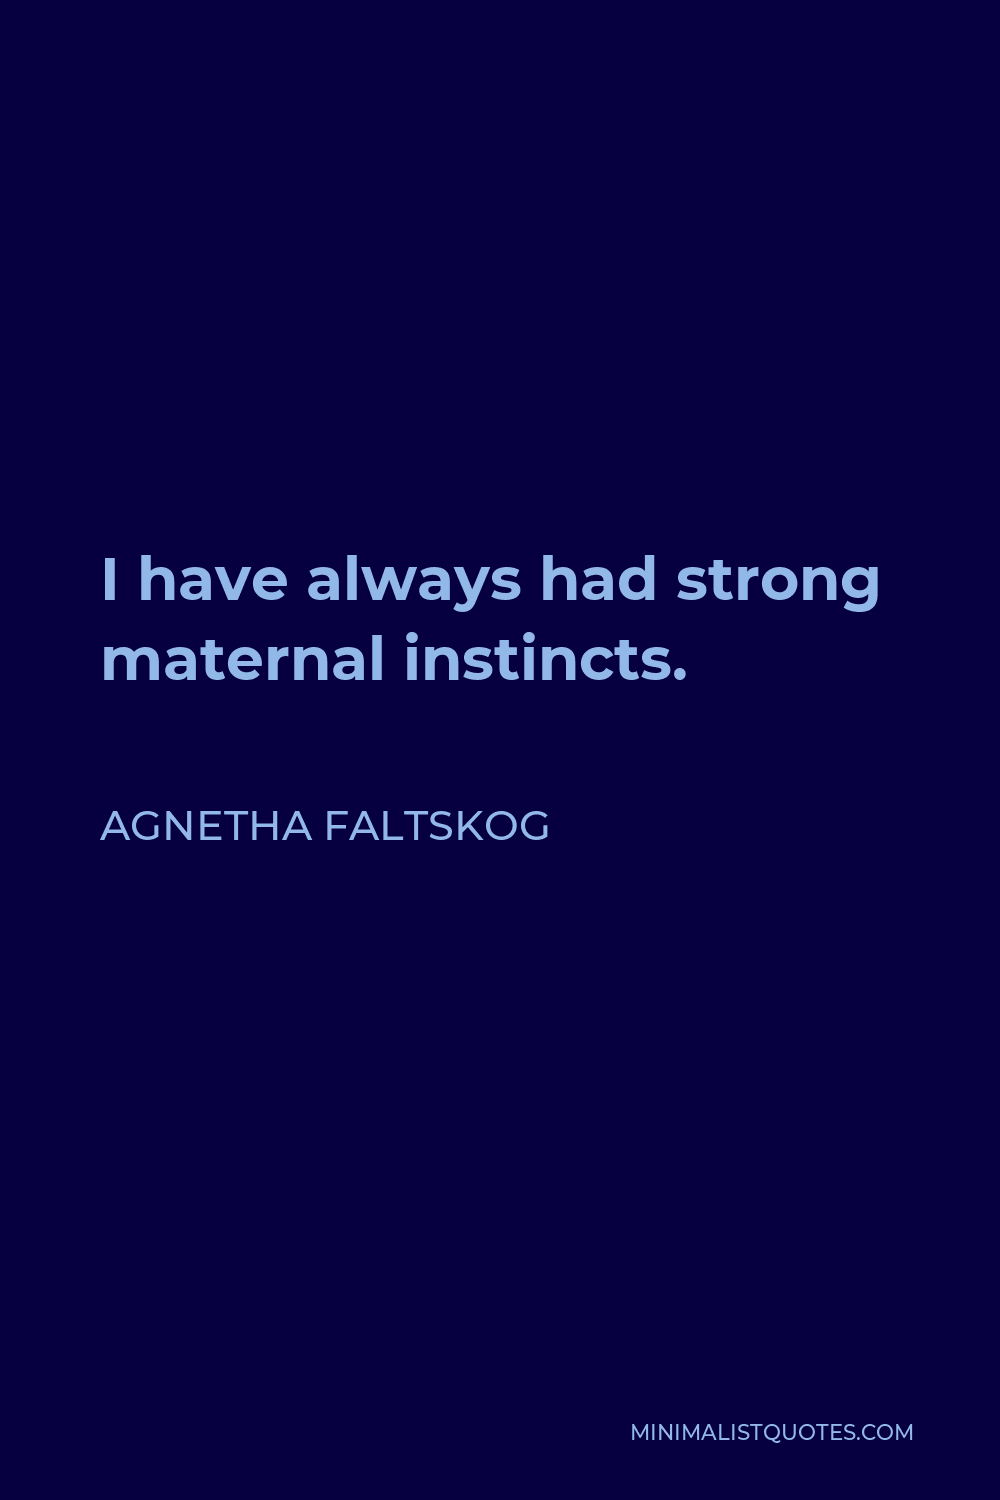 Agnetha Faltskog Quote - I have always had strong maternal instincts.